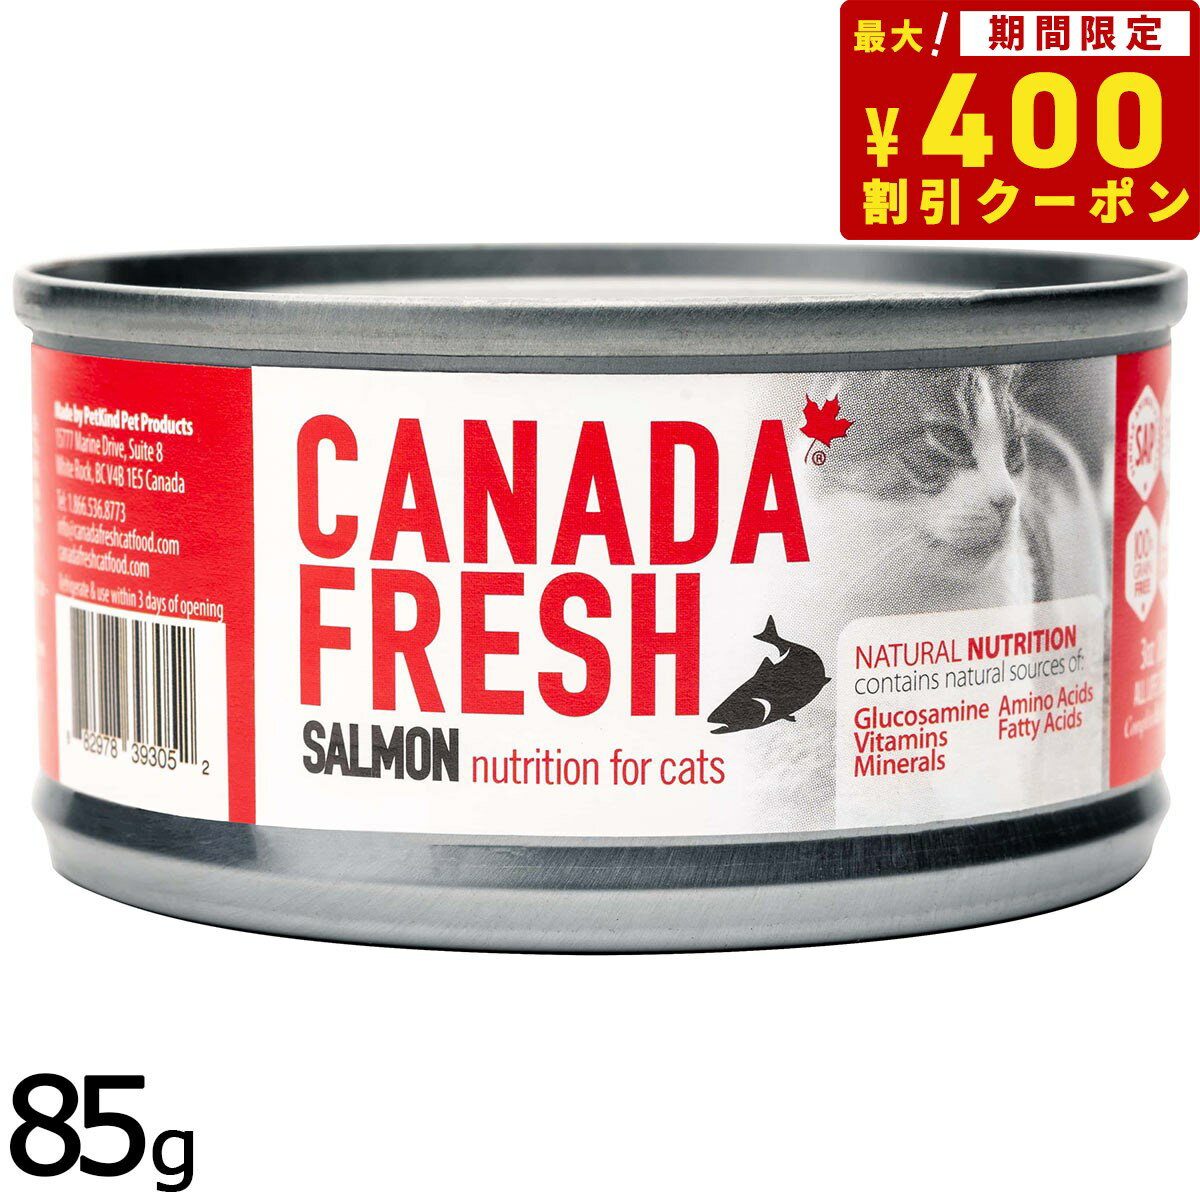 ペットカインド カナダフレッシュ キャットウェット サーモン SAP 85g 猫 キャットフード ウェットフード 缶詰 全猫種 全年齢 合成保存料・人工香料・着色料不使用 家禽肉不使用